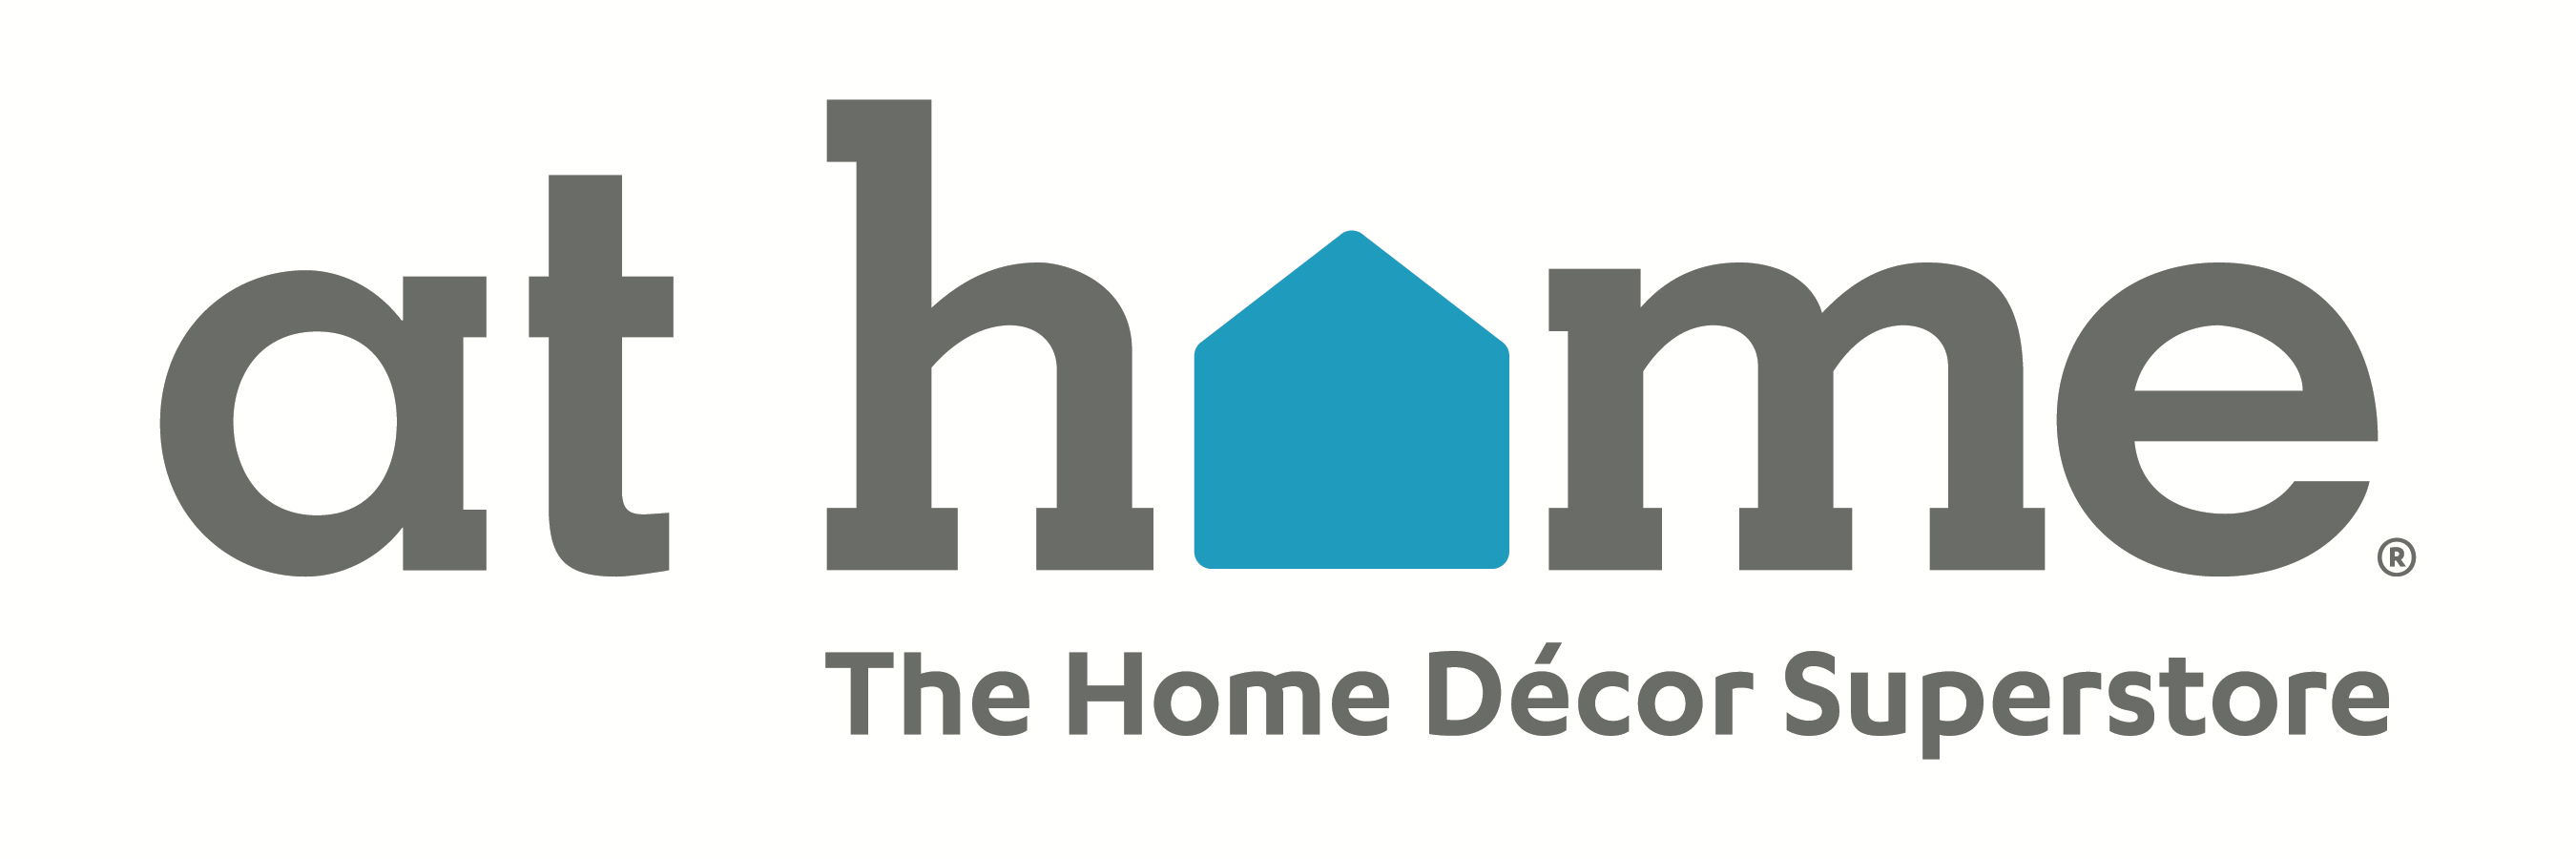 At Home Group Inc. logo